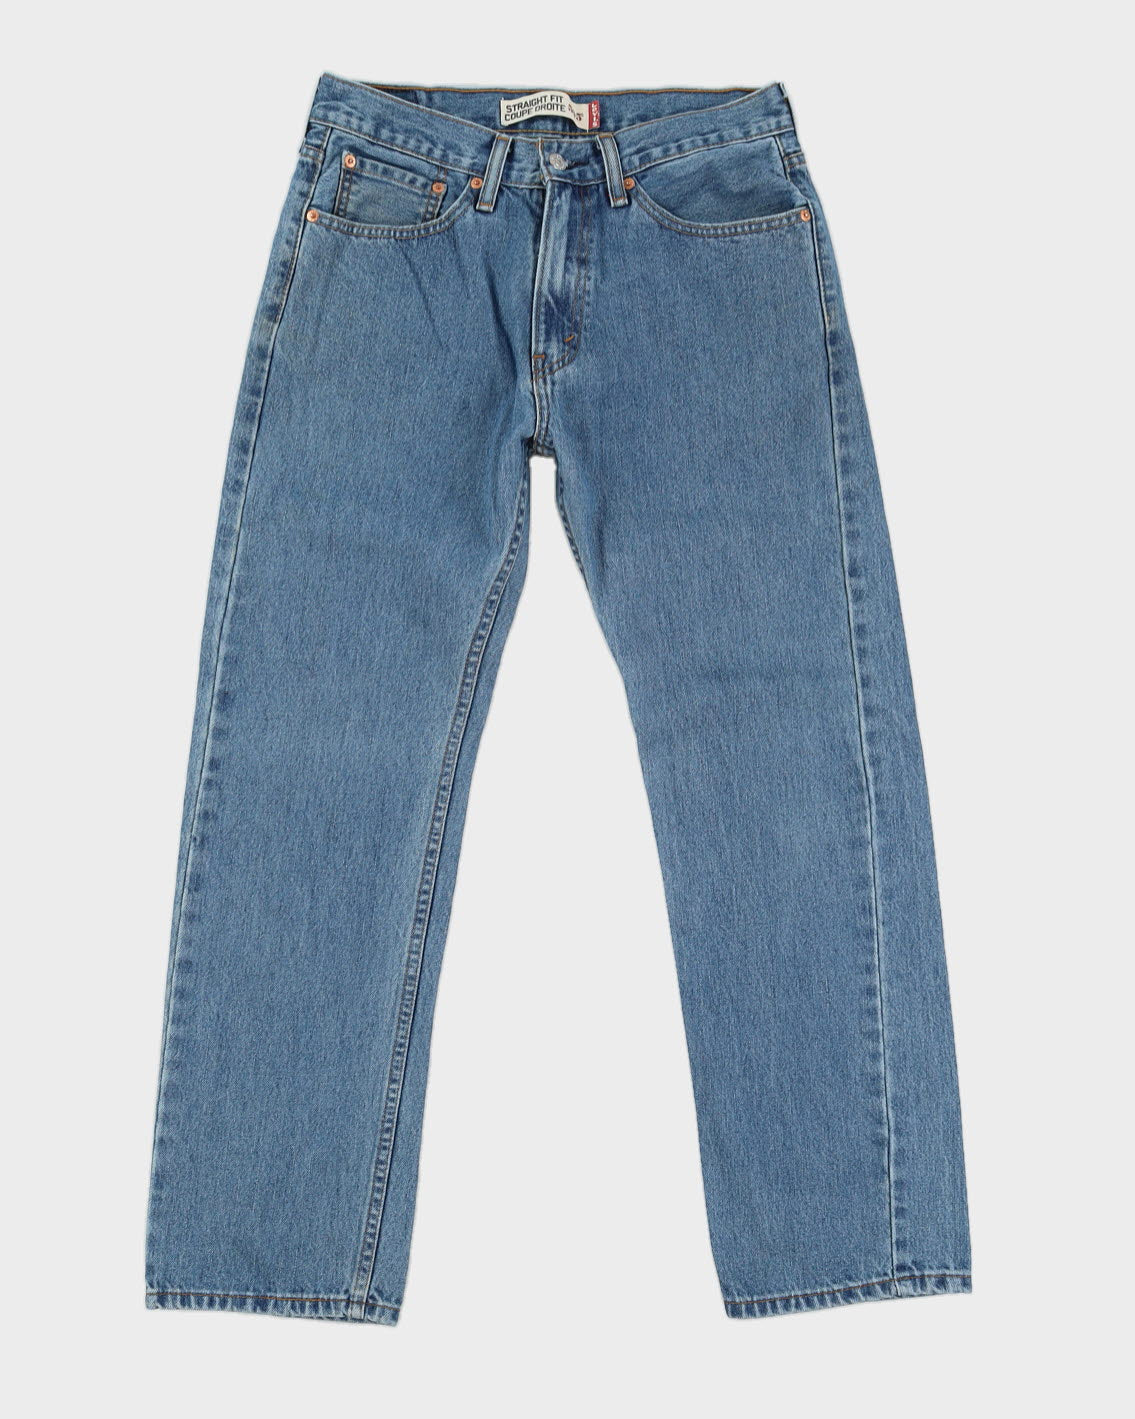 Levi's 505 Blue Jeans - W31 L30